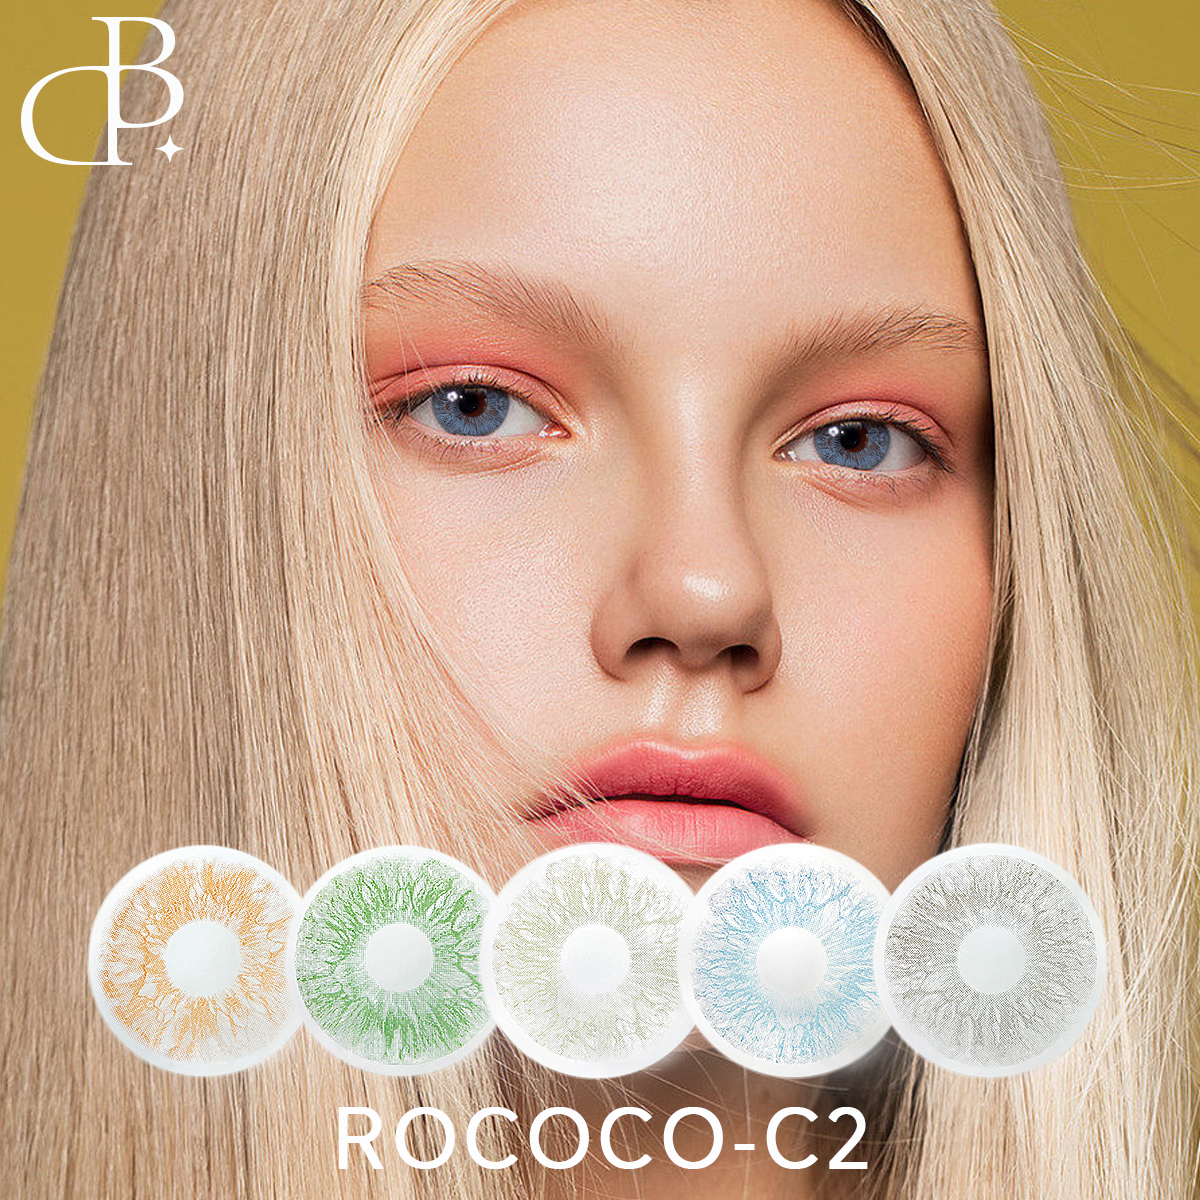 คอนแทคเลนส์สี ROCOCO-2 พร้อมพลัง ODM Beauty Lenses ขายส่งธรรมชาติ โรงงานคอนแทคเลนส์ จัดส่งที่รวดเร็ว